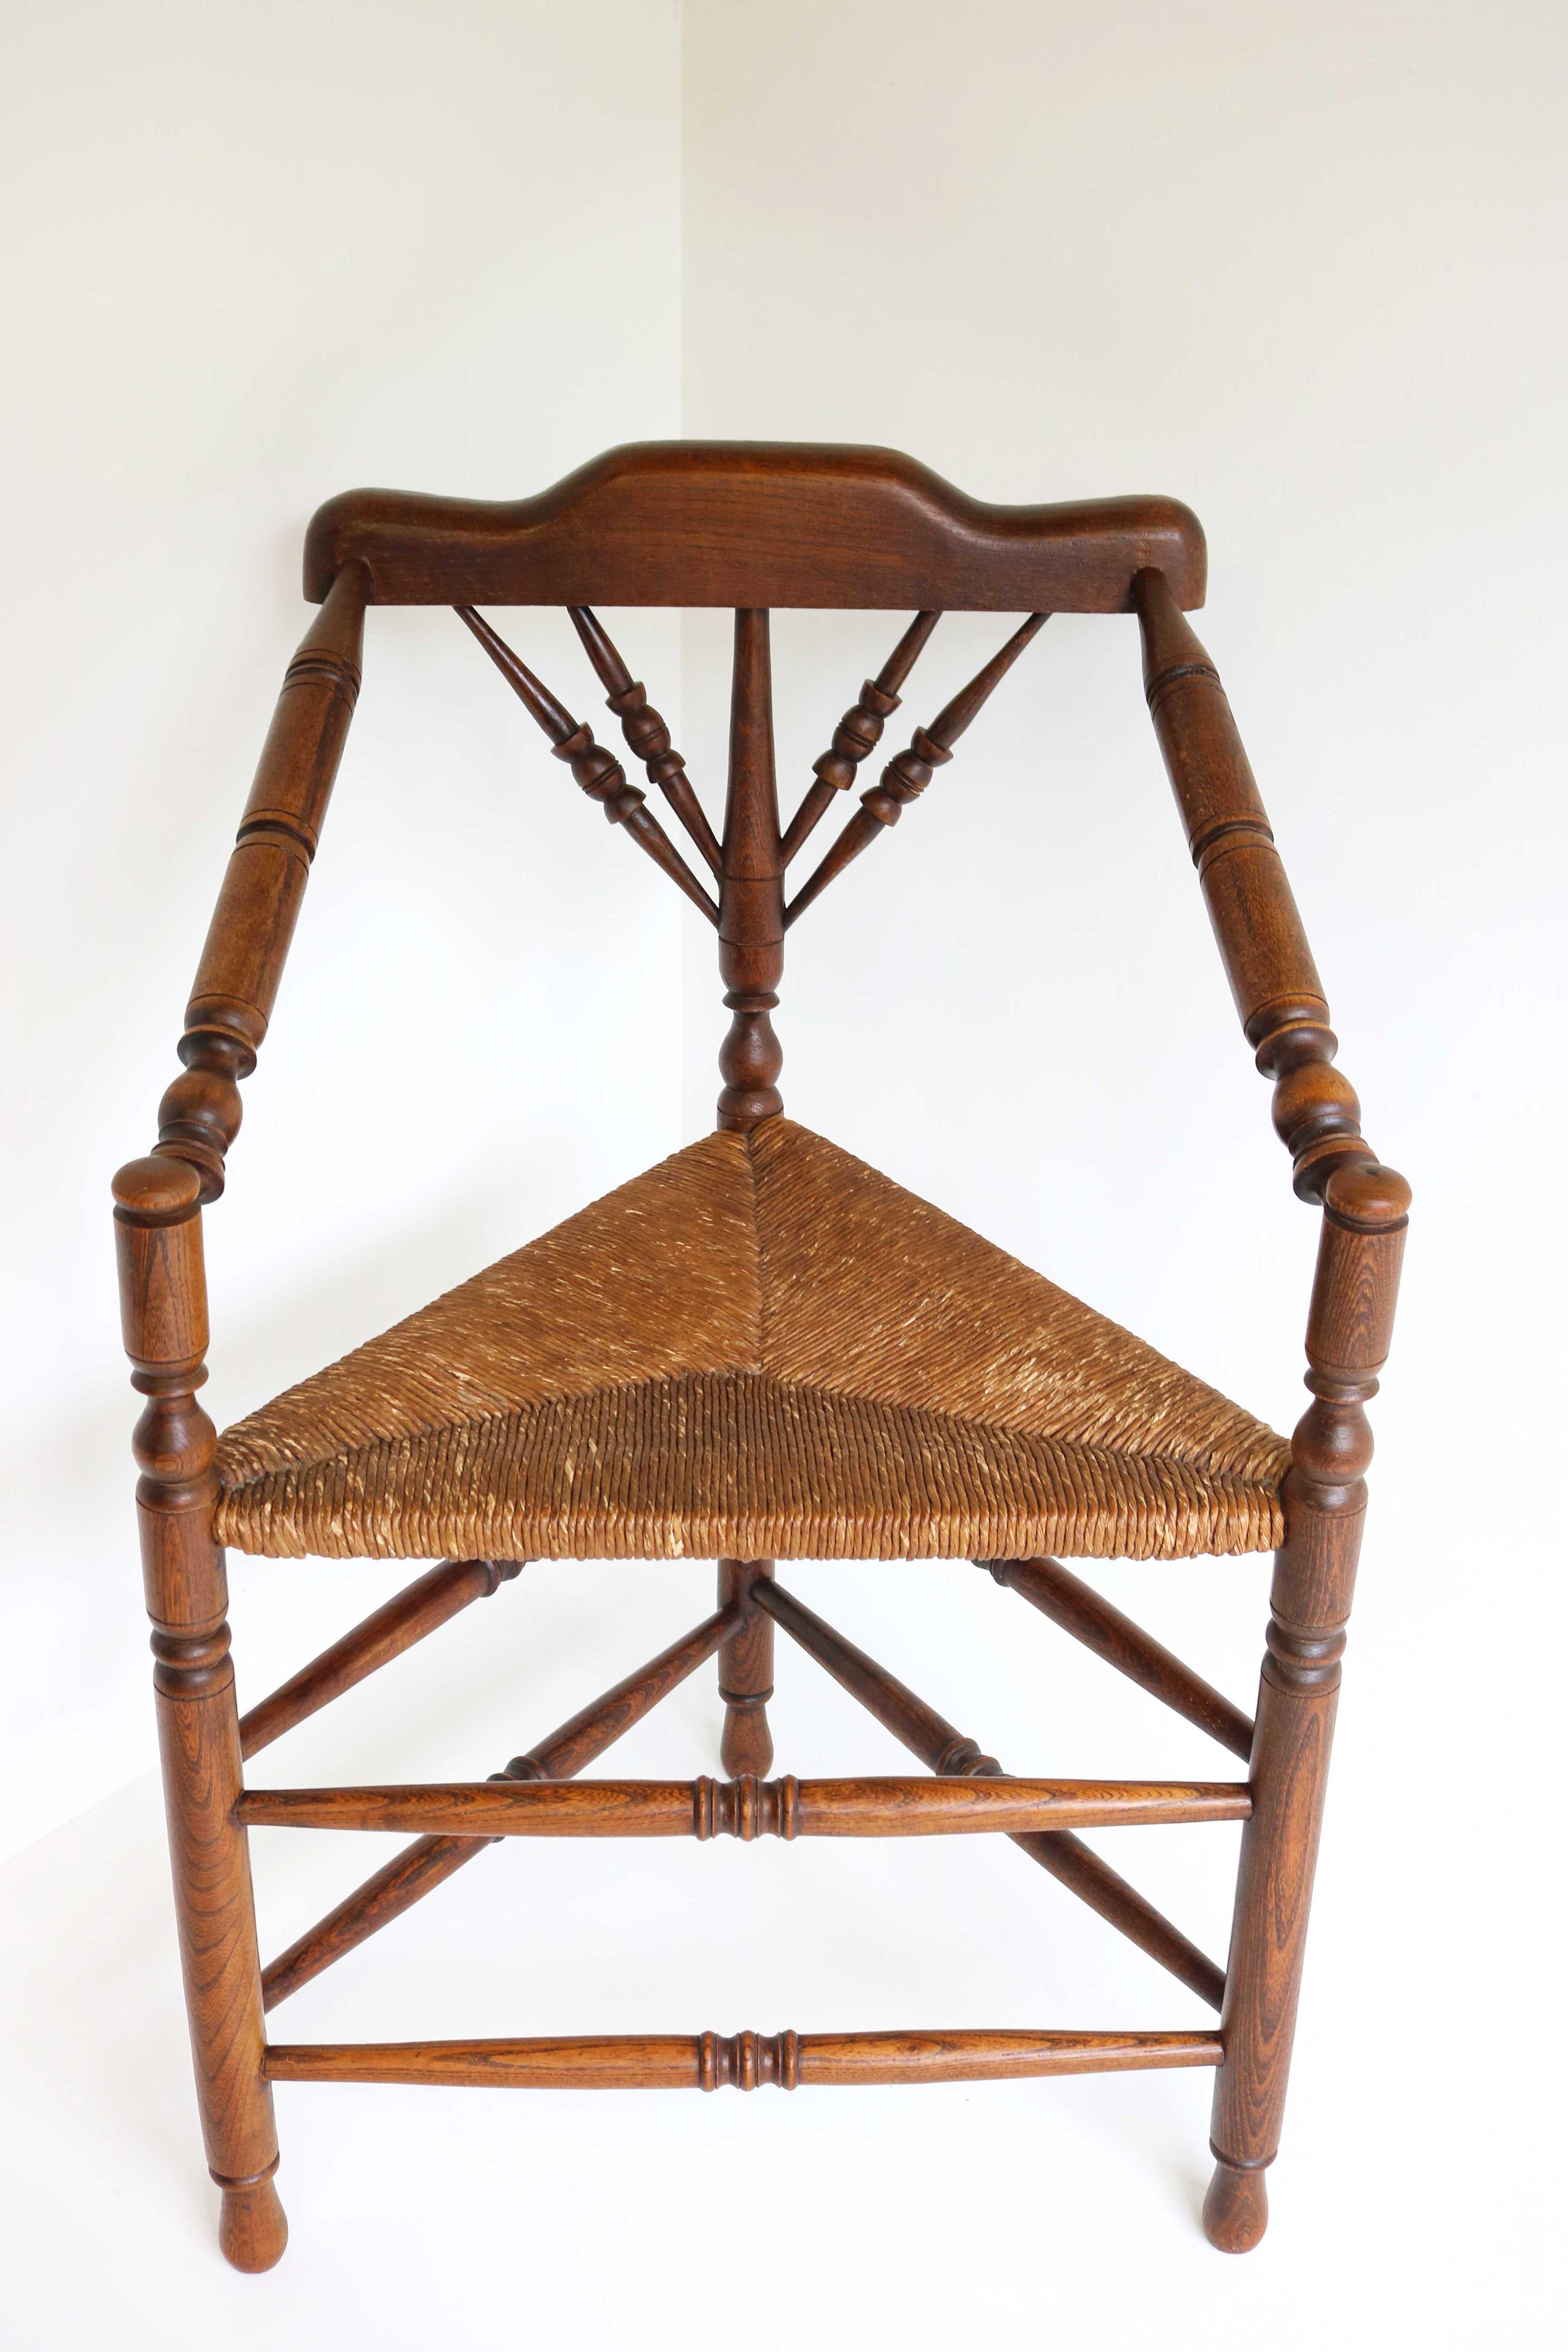 Holzsessel aus dem späten 19. Jahrhundert im edwardianischen Stil mit Sitz aus Binsen, um 1900
Hergestellt im Vereinigten Königreich.
Schöner englischer, antiker Strickstuhl mit drei Beinen.
Dieser alte, robuste Stuhl mit gedrechselten Beinen